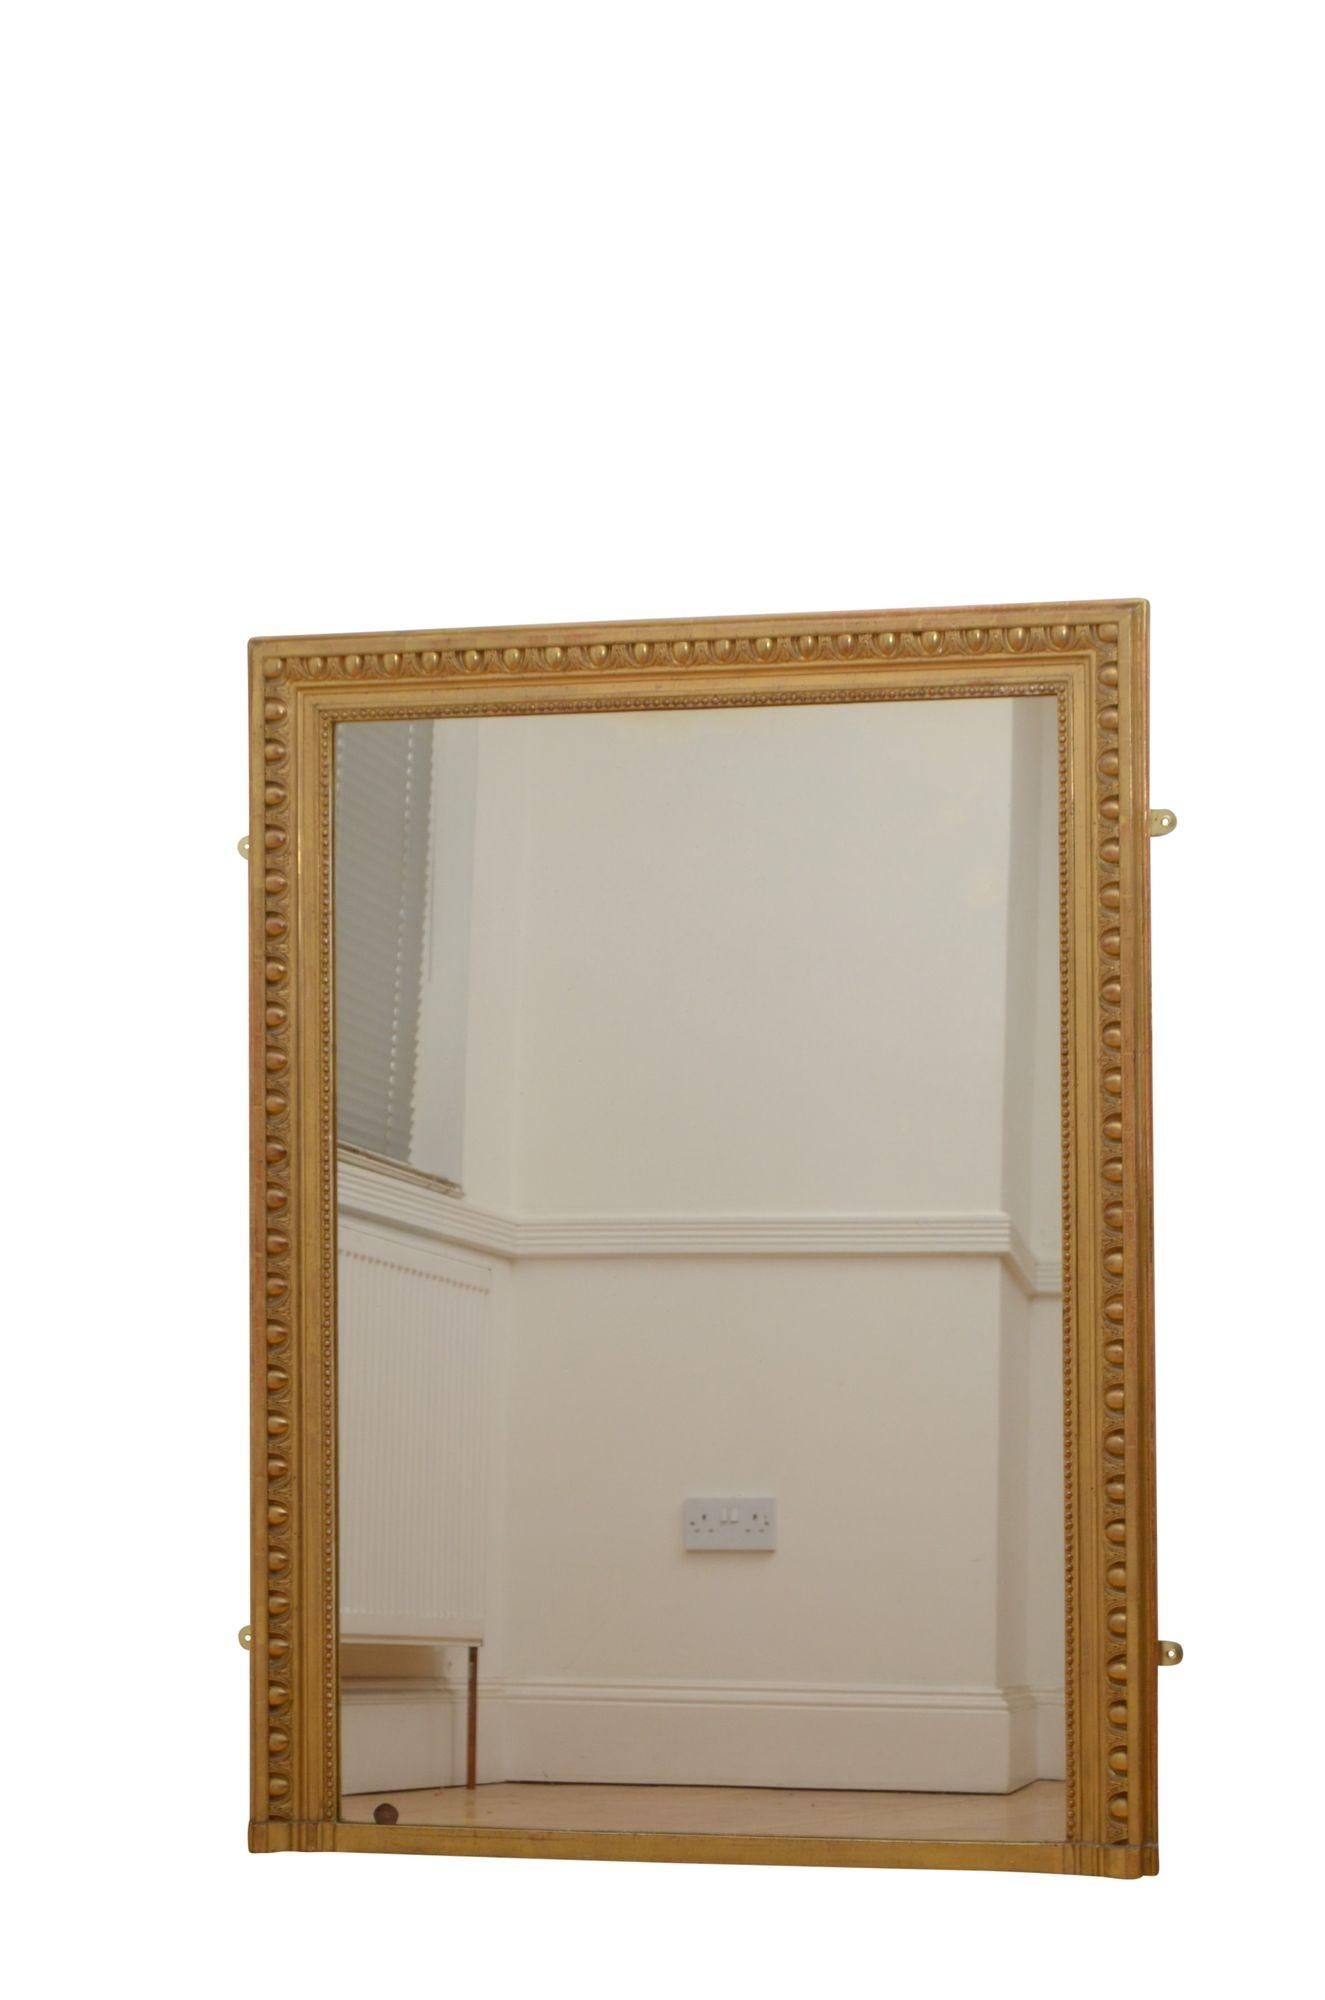 P0255  Console ou miroir mural en bois doré français du XIXe siècle, avec verre d'origine présentant de légères rousseurs et imperfections et cadre doré avec bord perlé - 